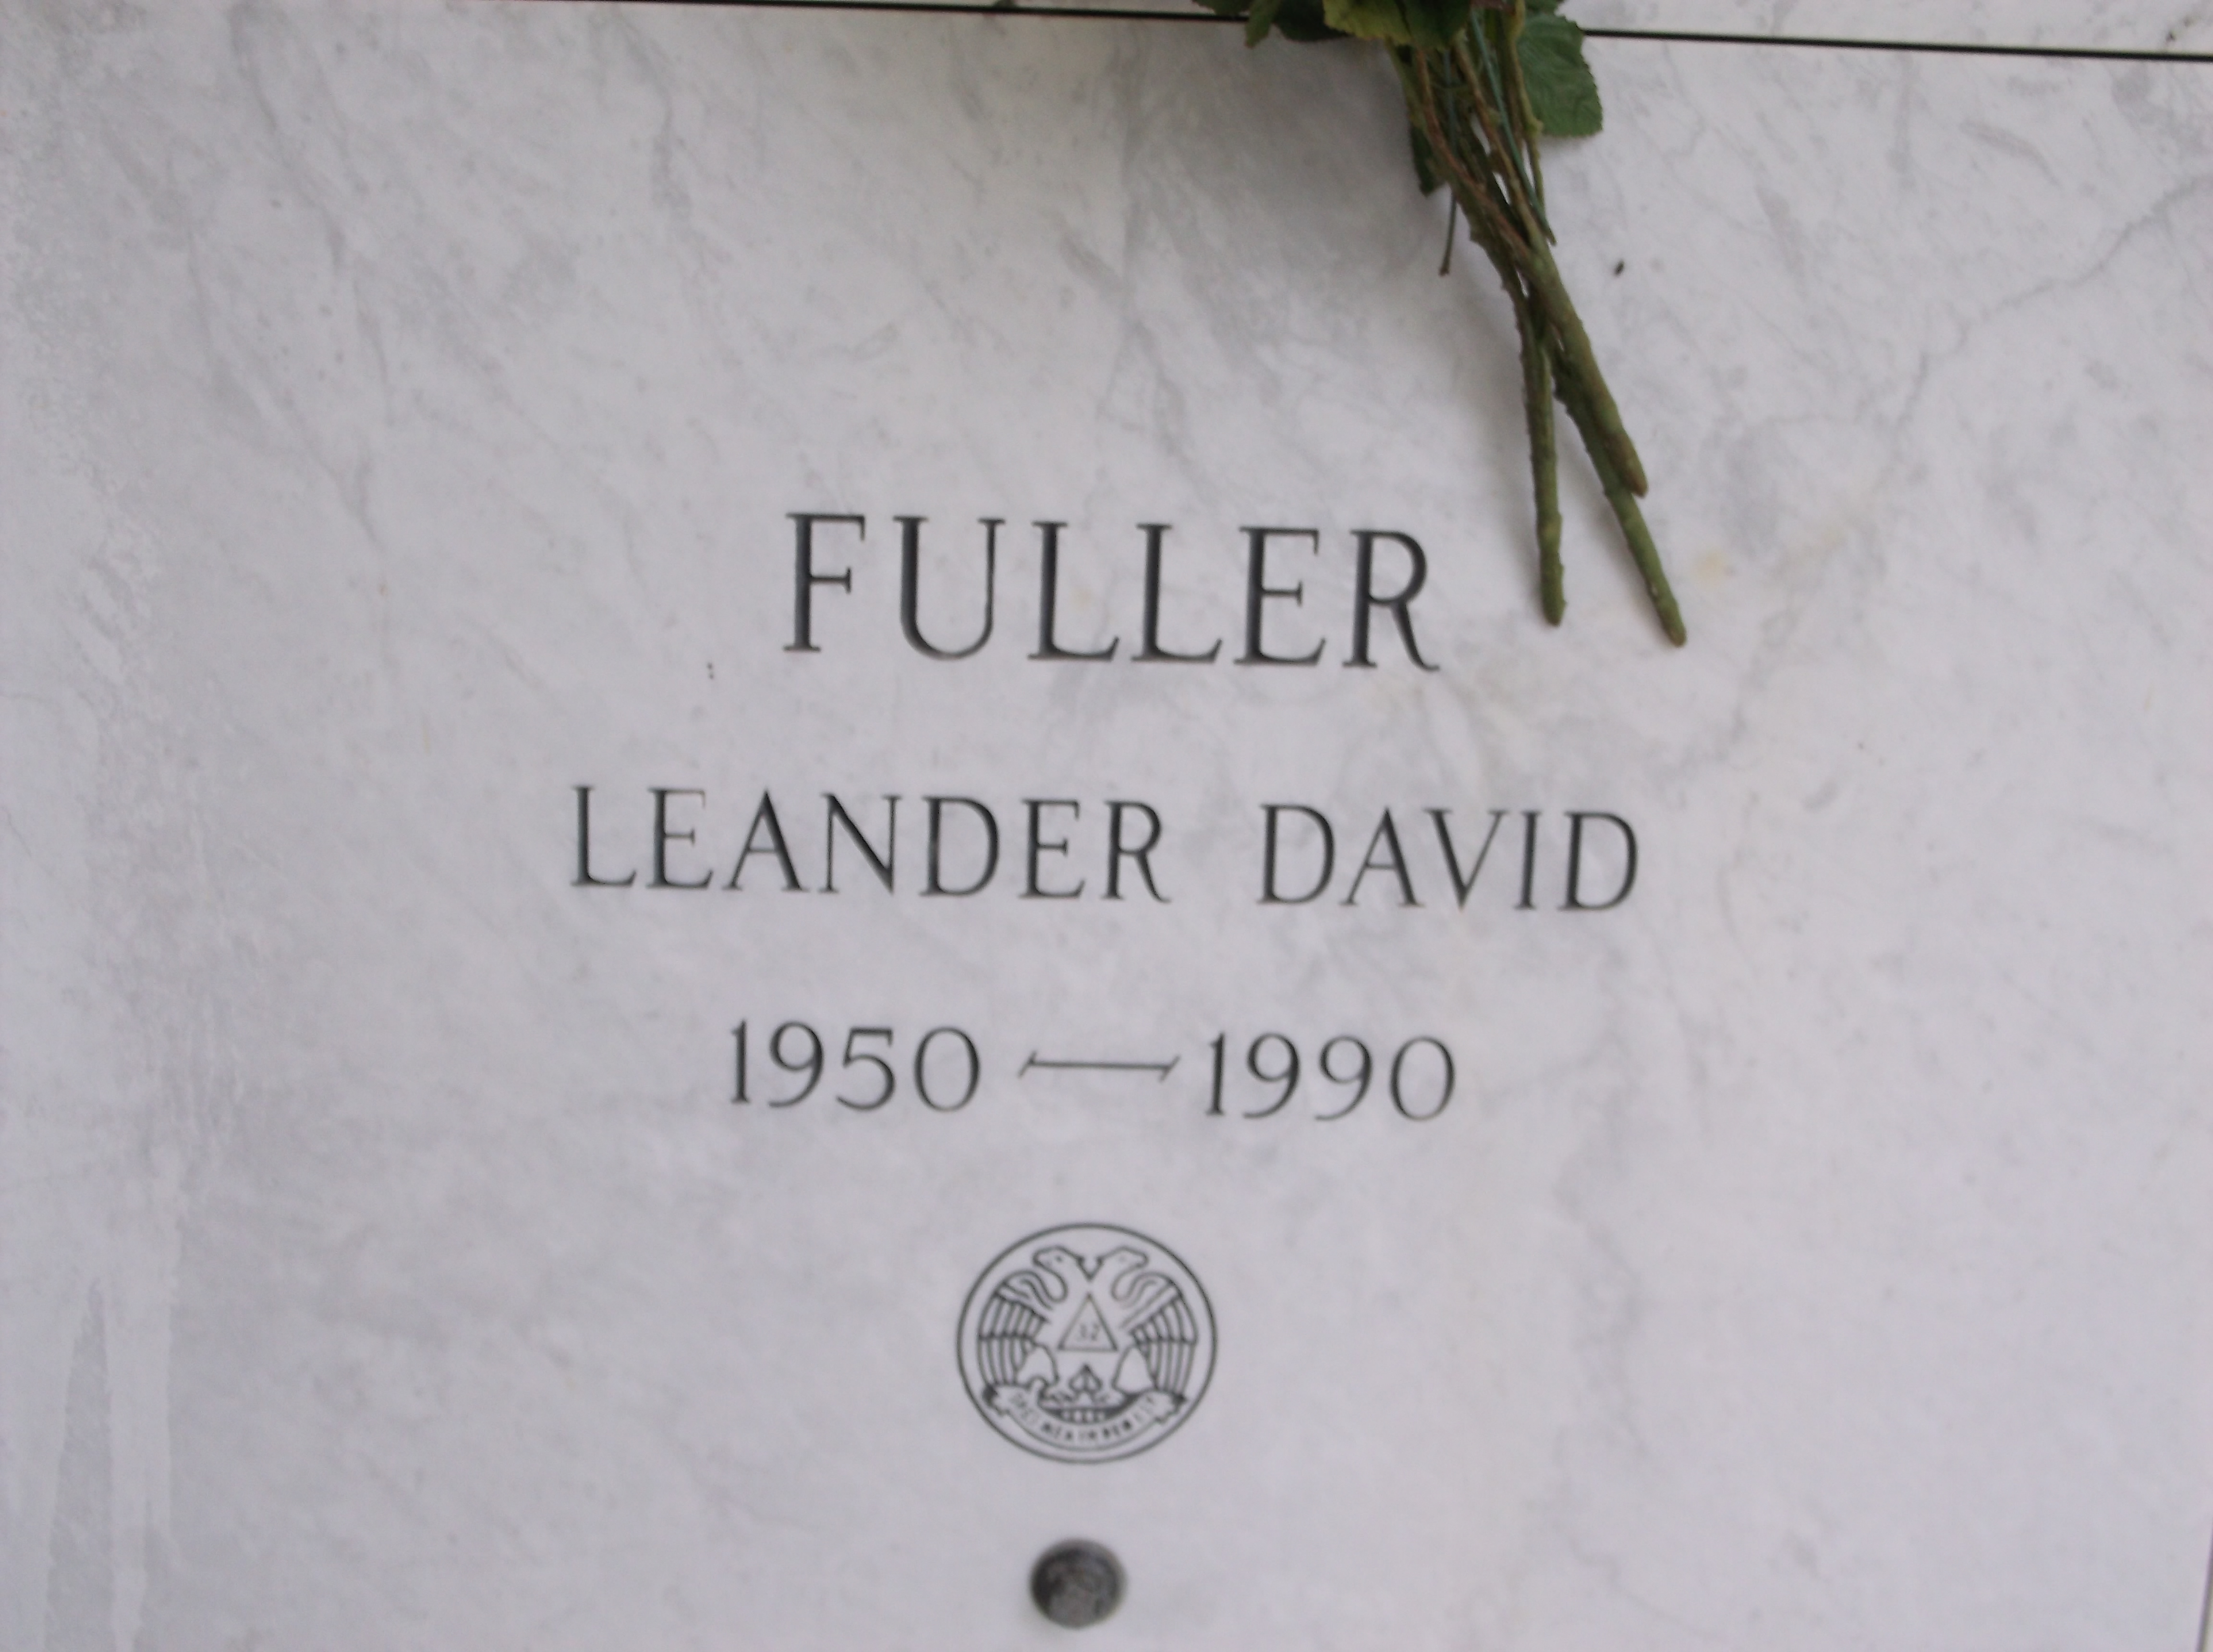 Leander David Fuller